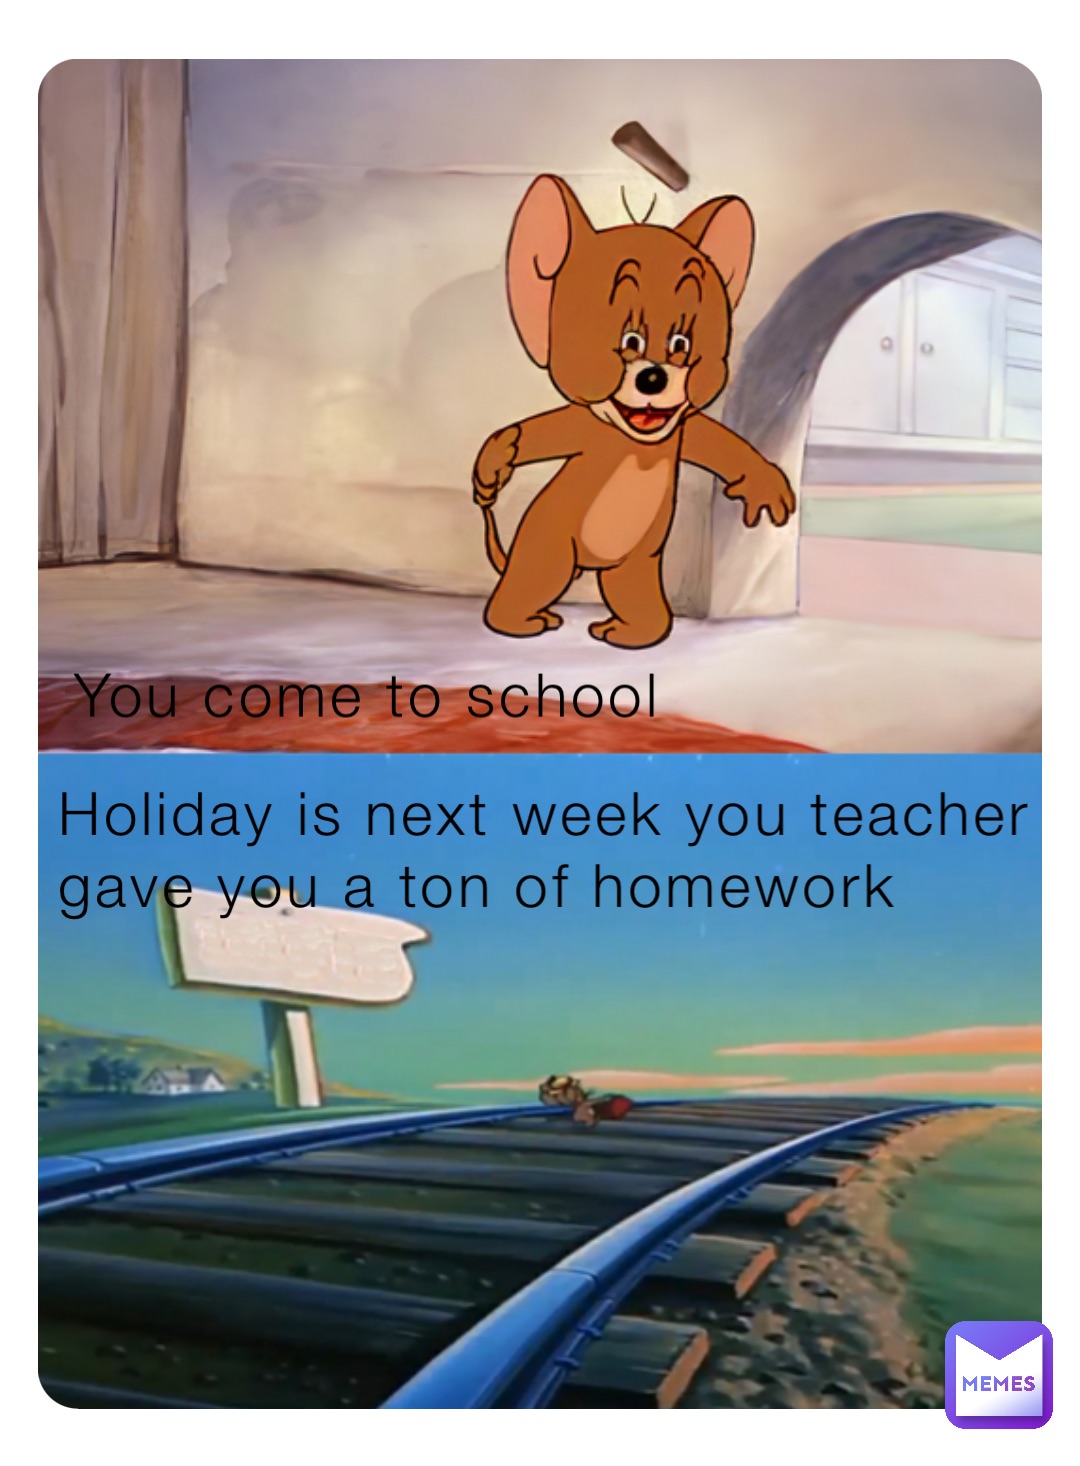 the teacher gave us a ton of homework